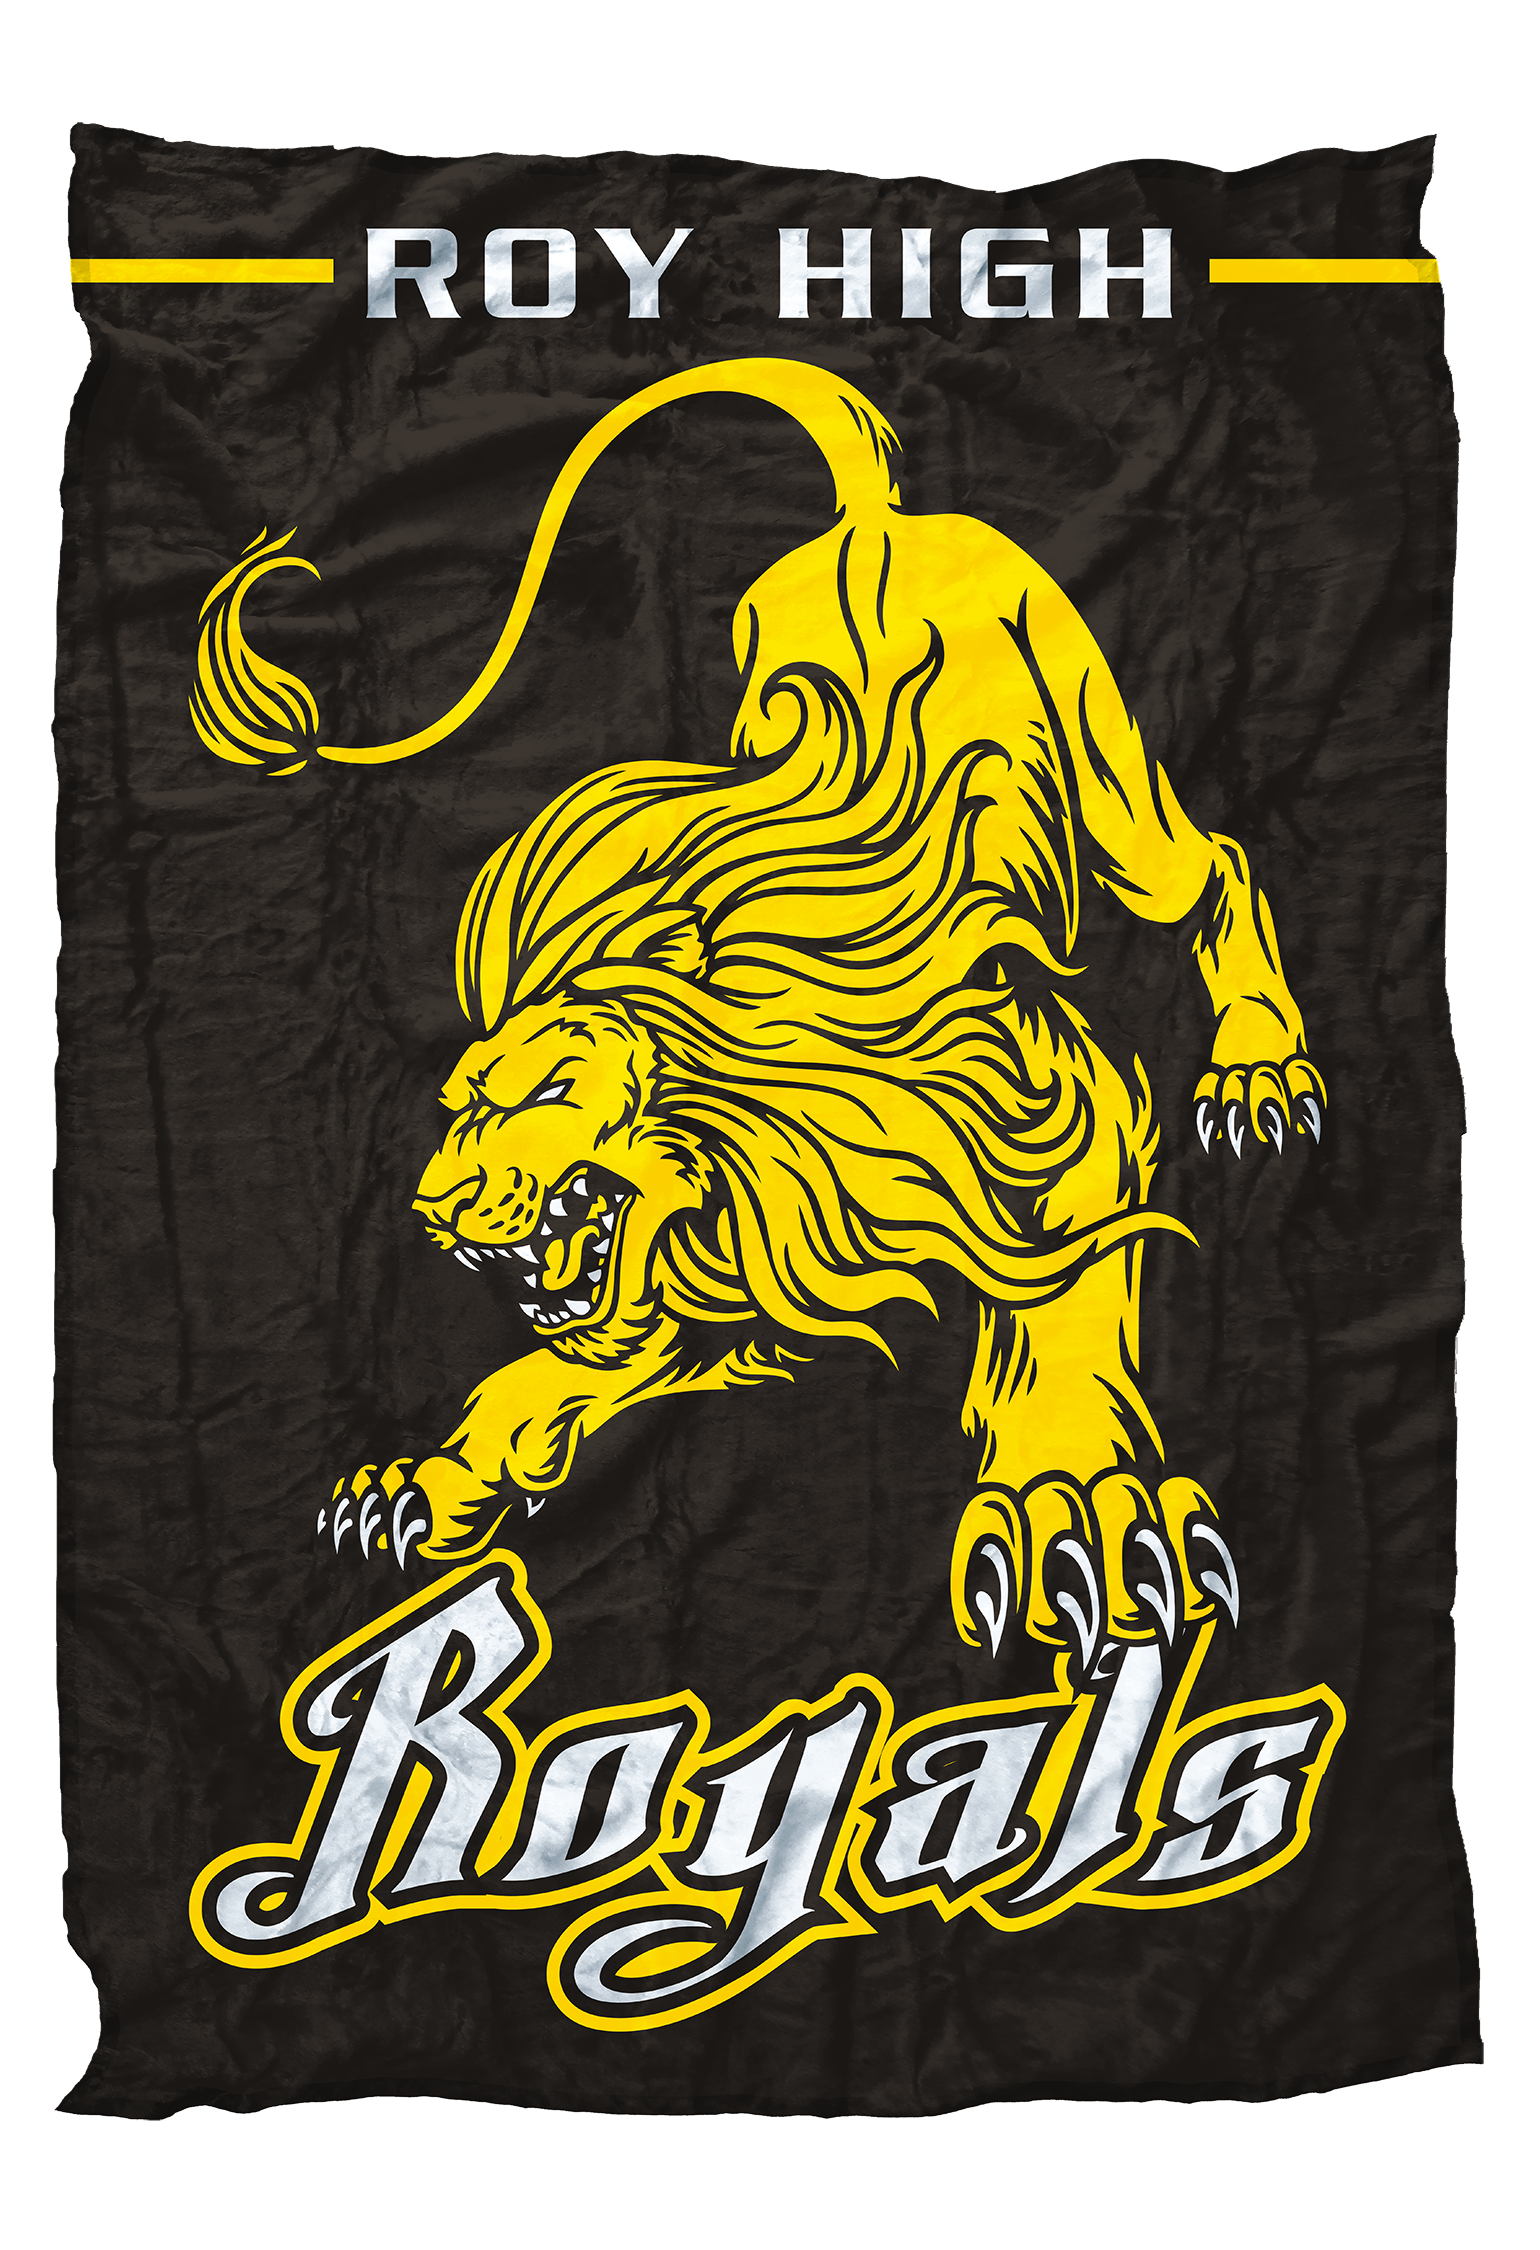 Roy Royals